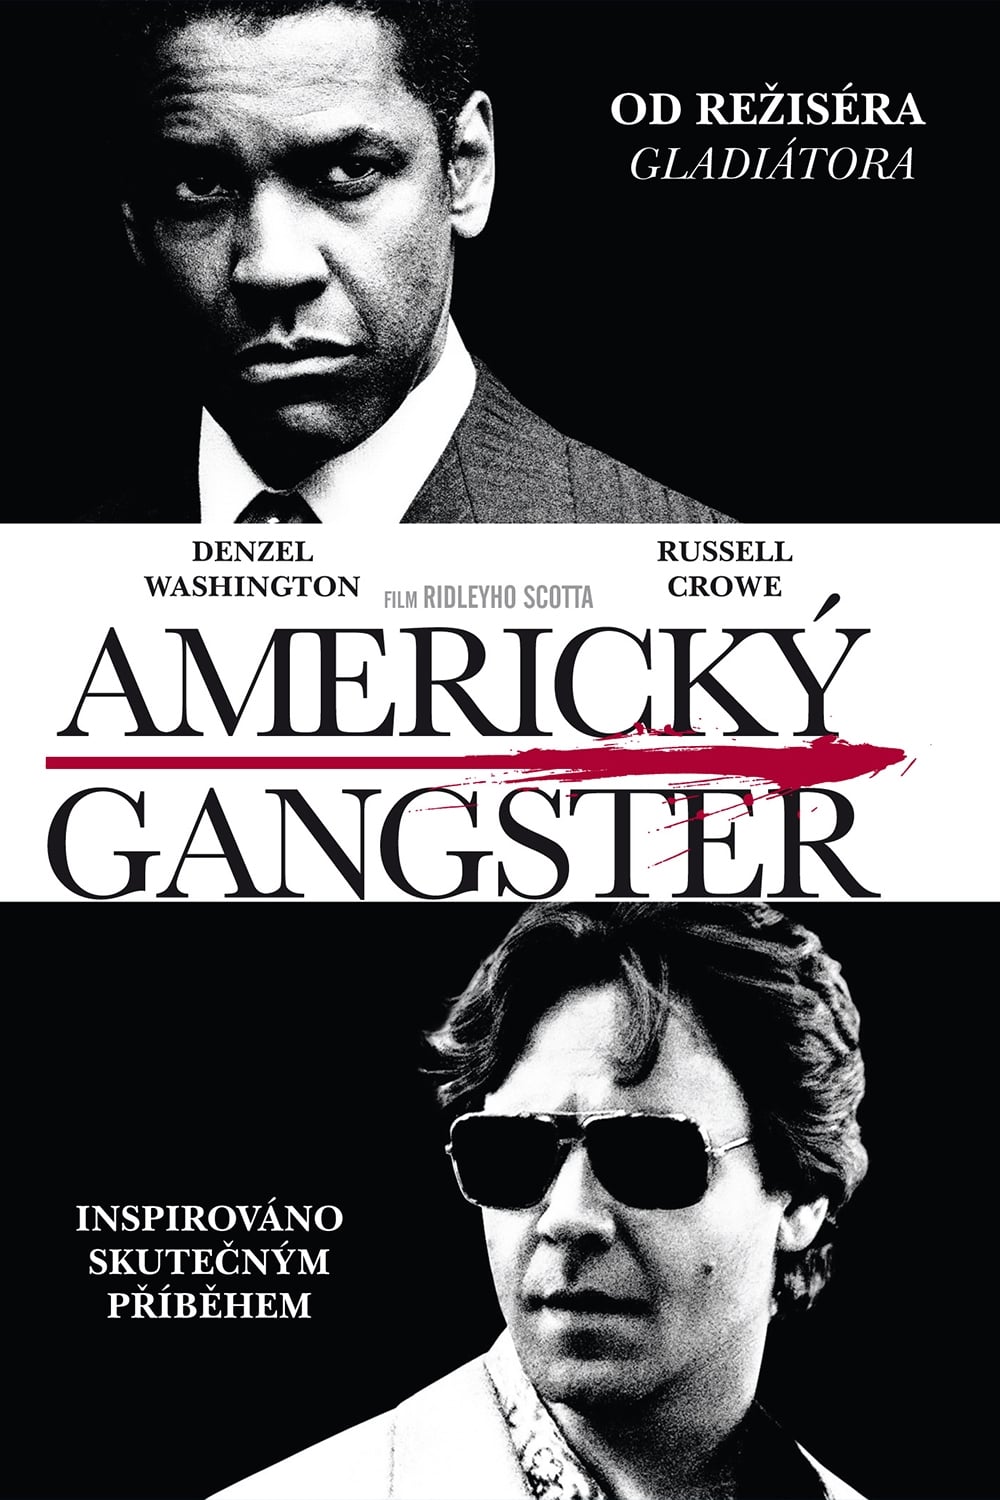 Plakát pro film “Americký gangster”